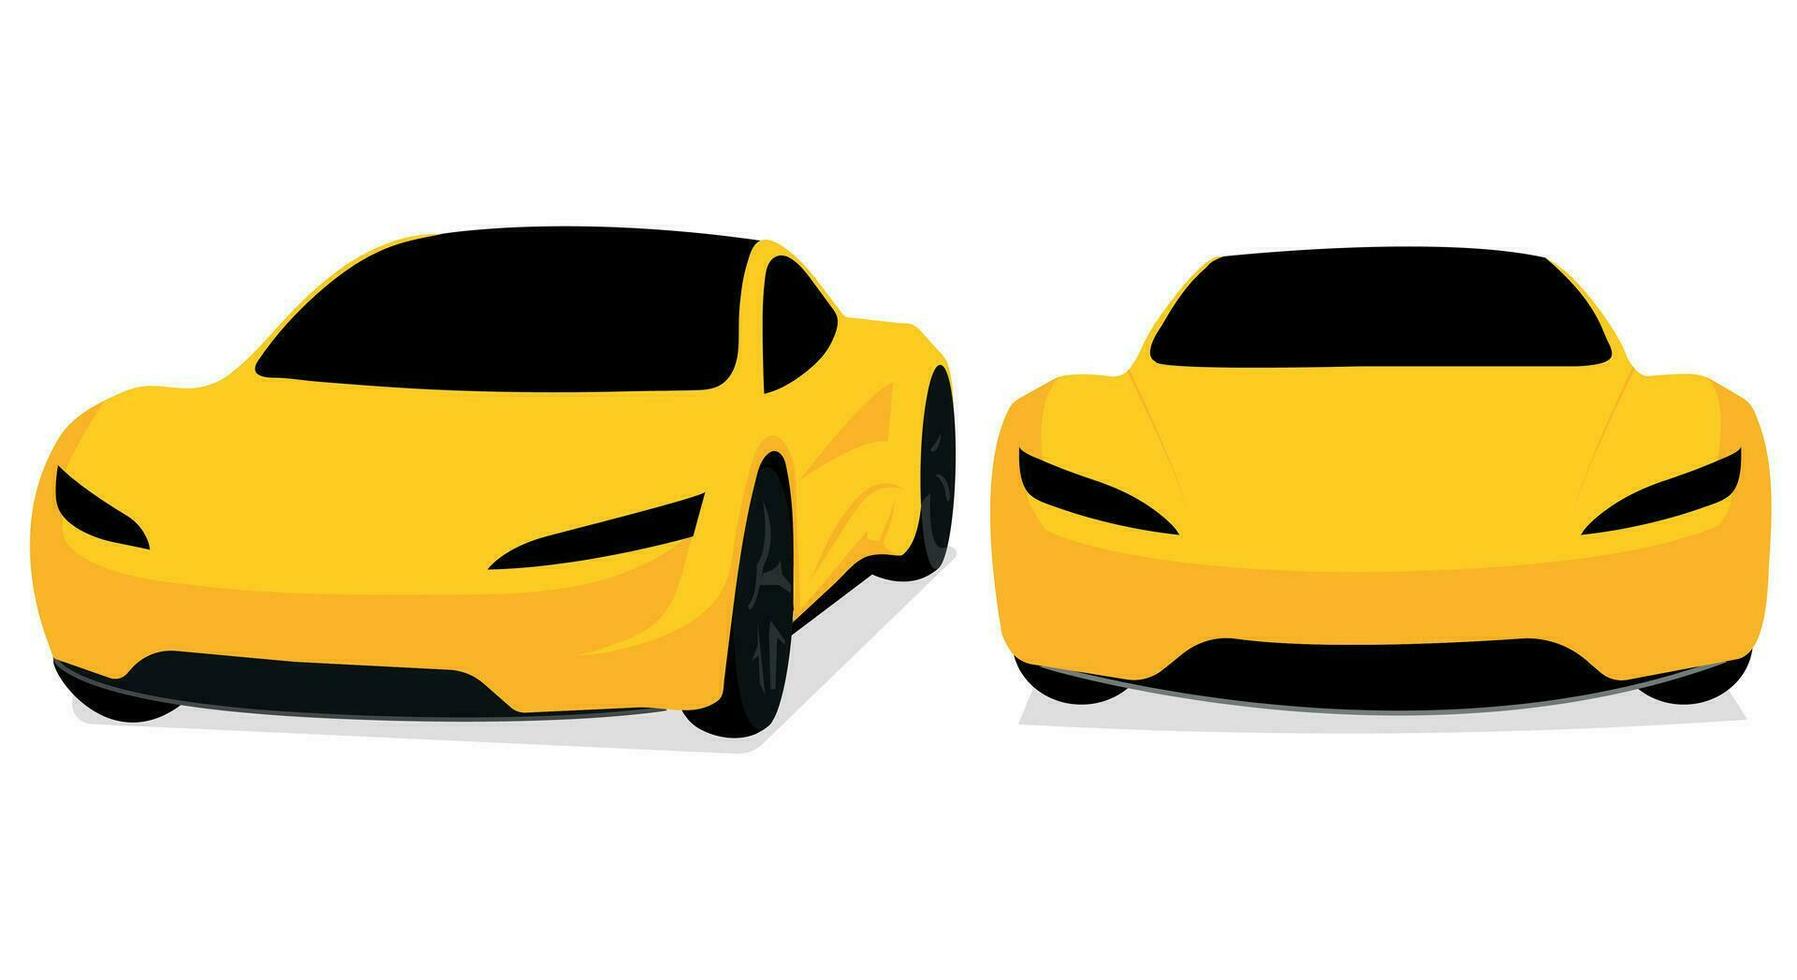 realistisk bil isolerat på vit. vektor bil illustration. uppsättning de bil från Allt sidor.